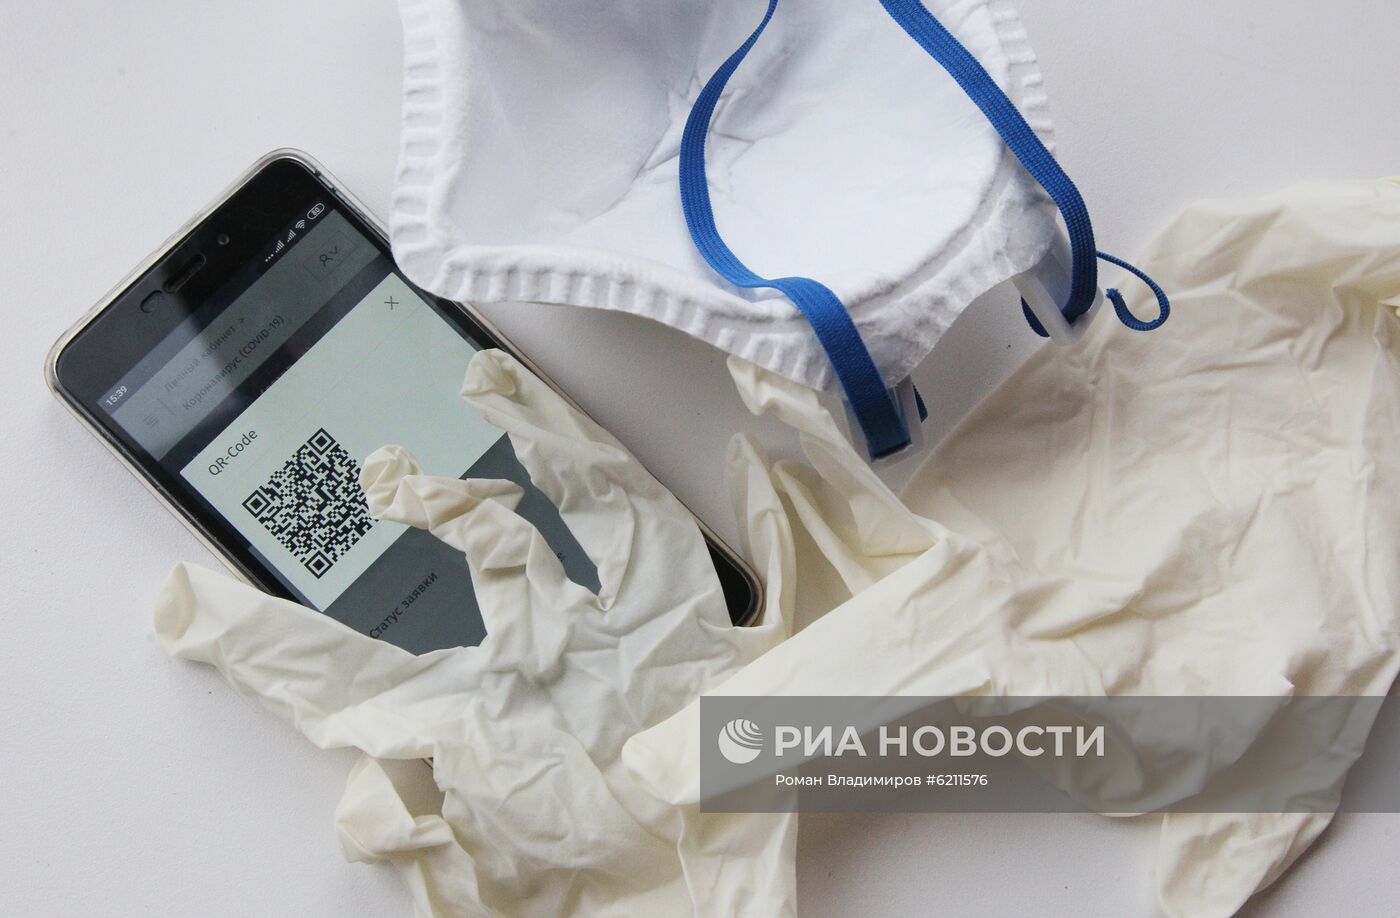 В Нижегородской области будут выдавать спецпропуска в виде QR-кодов